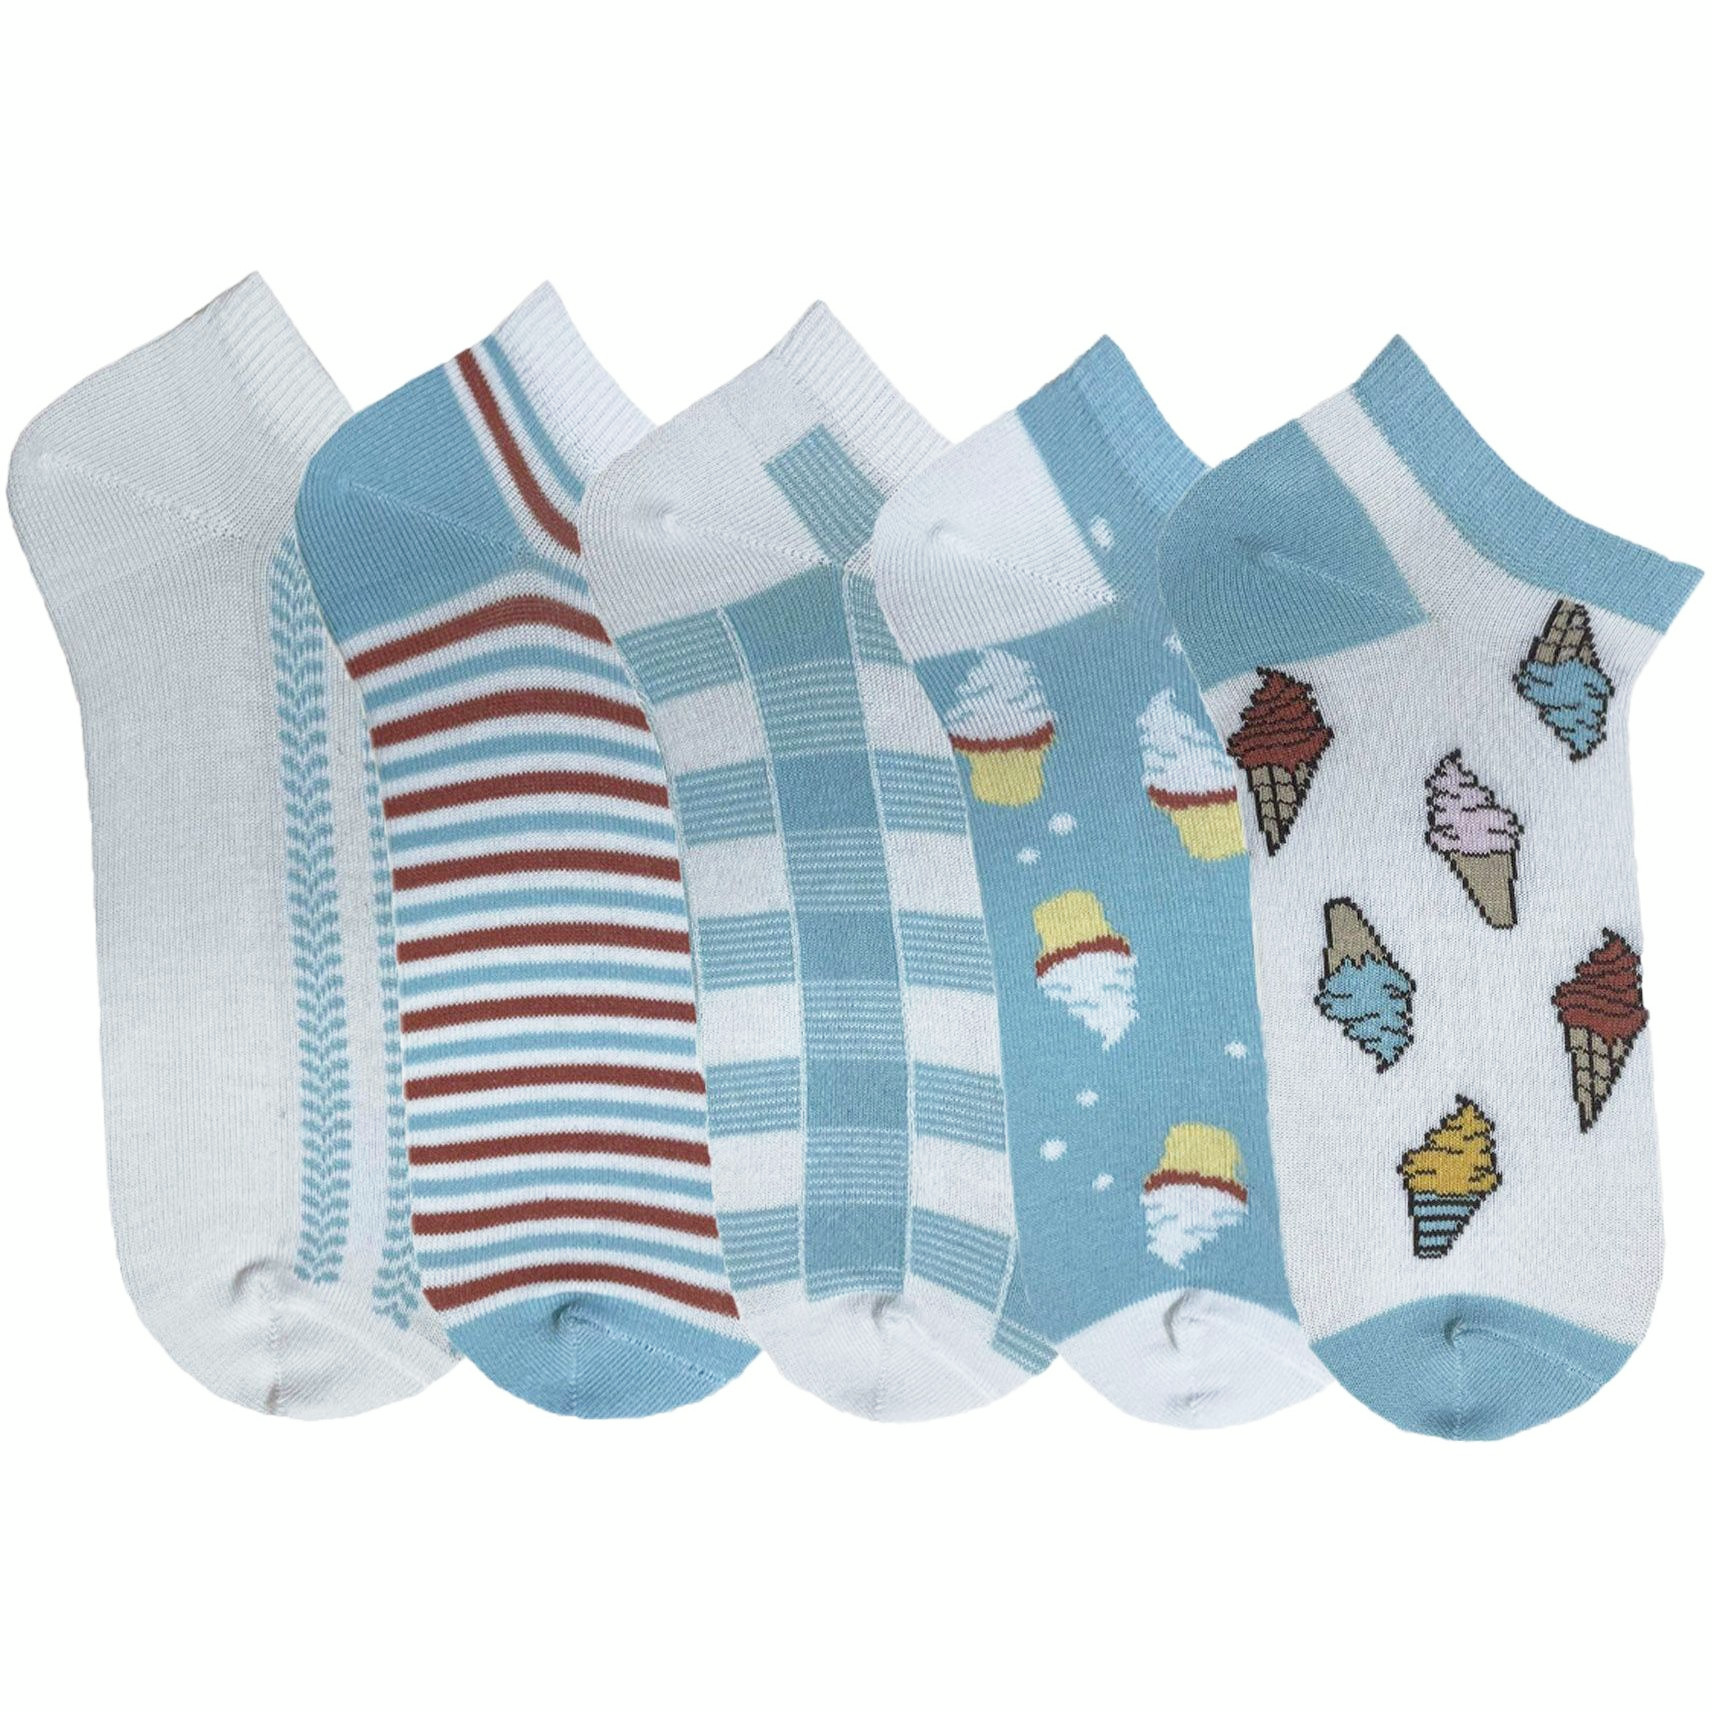 Набор носков женских Premier Socks 36-40 5 пар голубые с принтом (4820163319346) фото 1